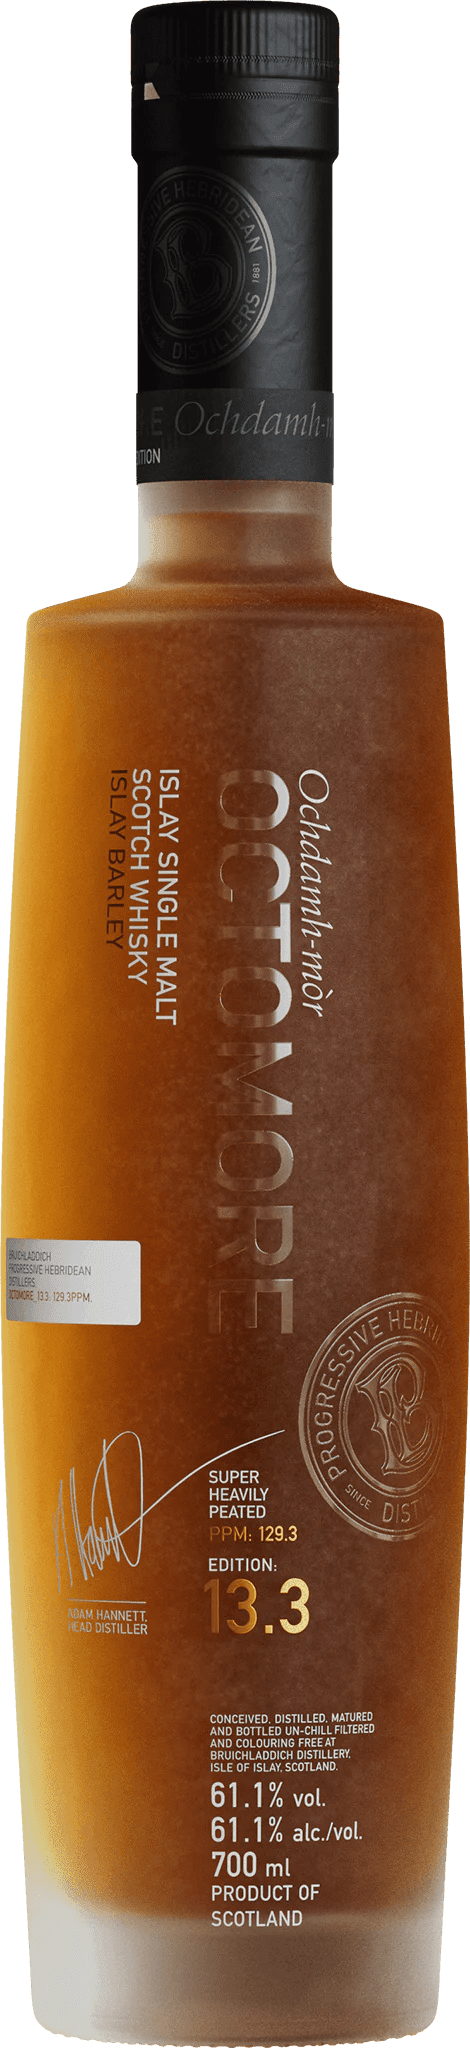 Bruichladdich Octomore Edition 13.3